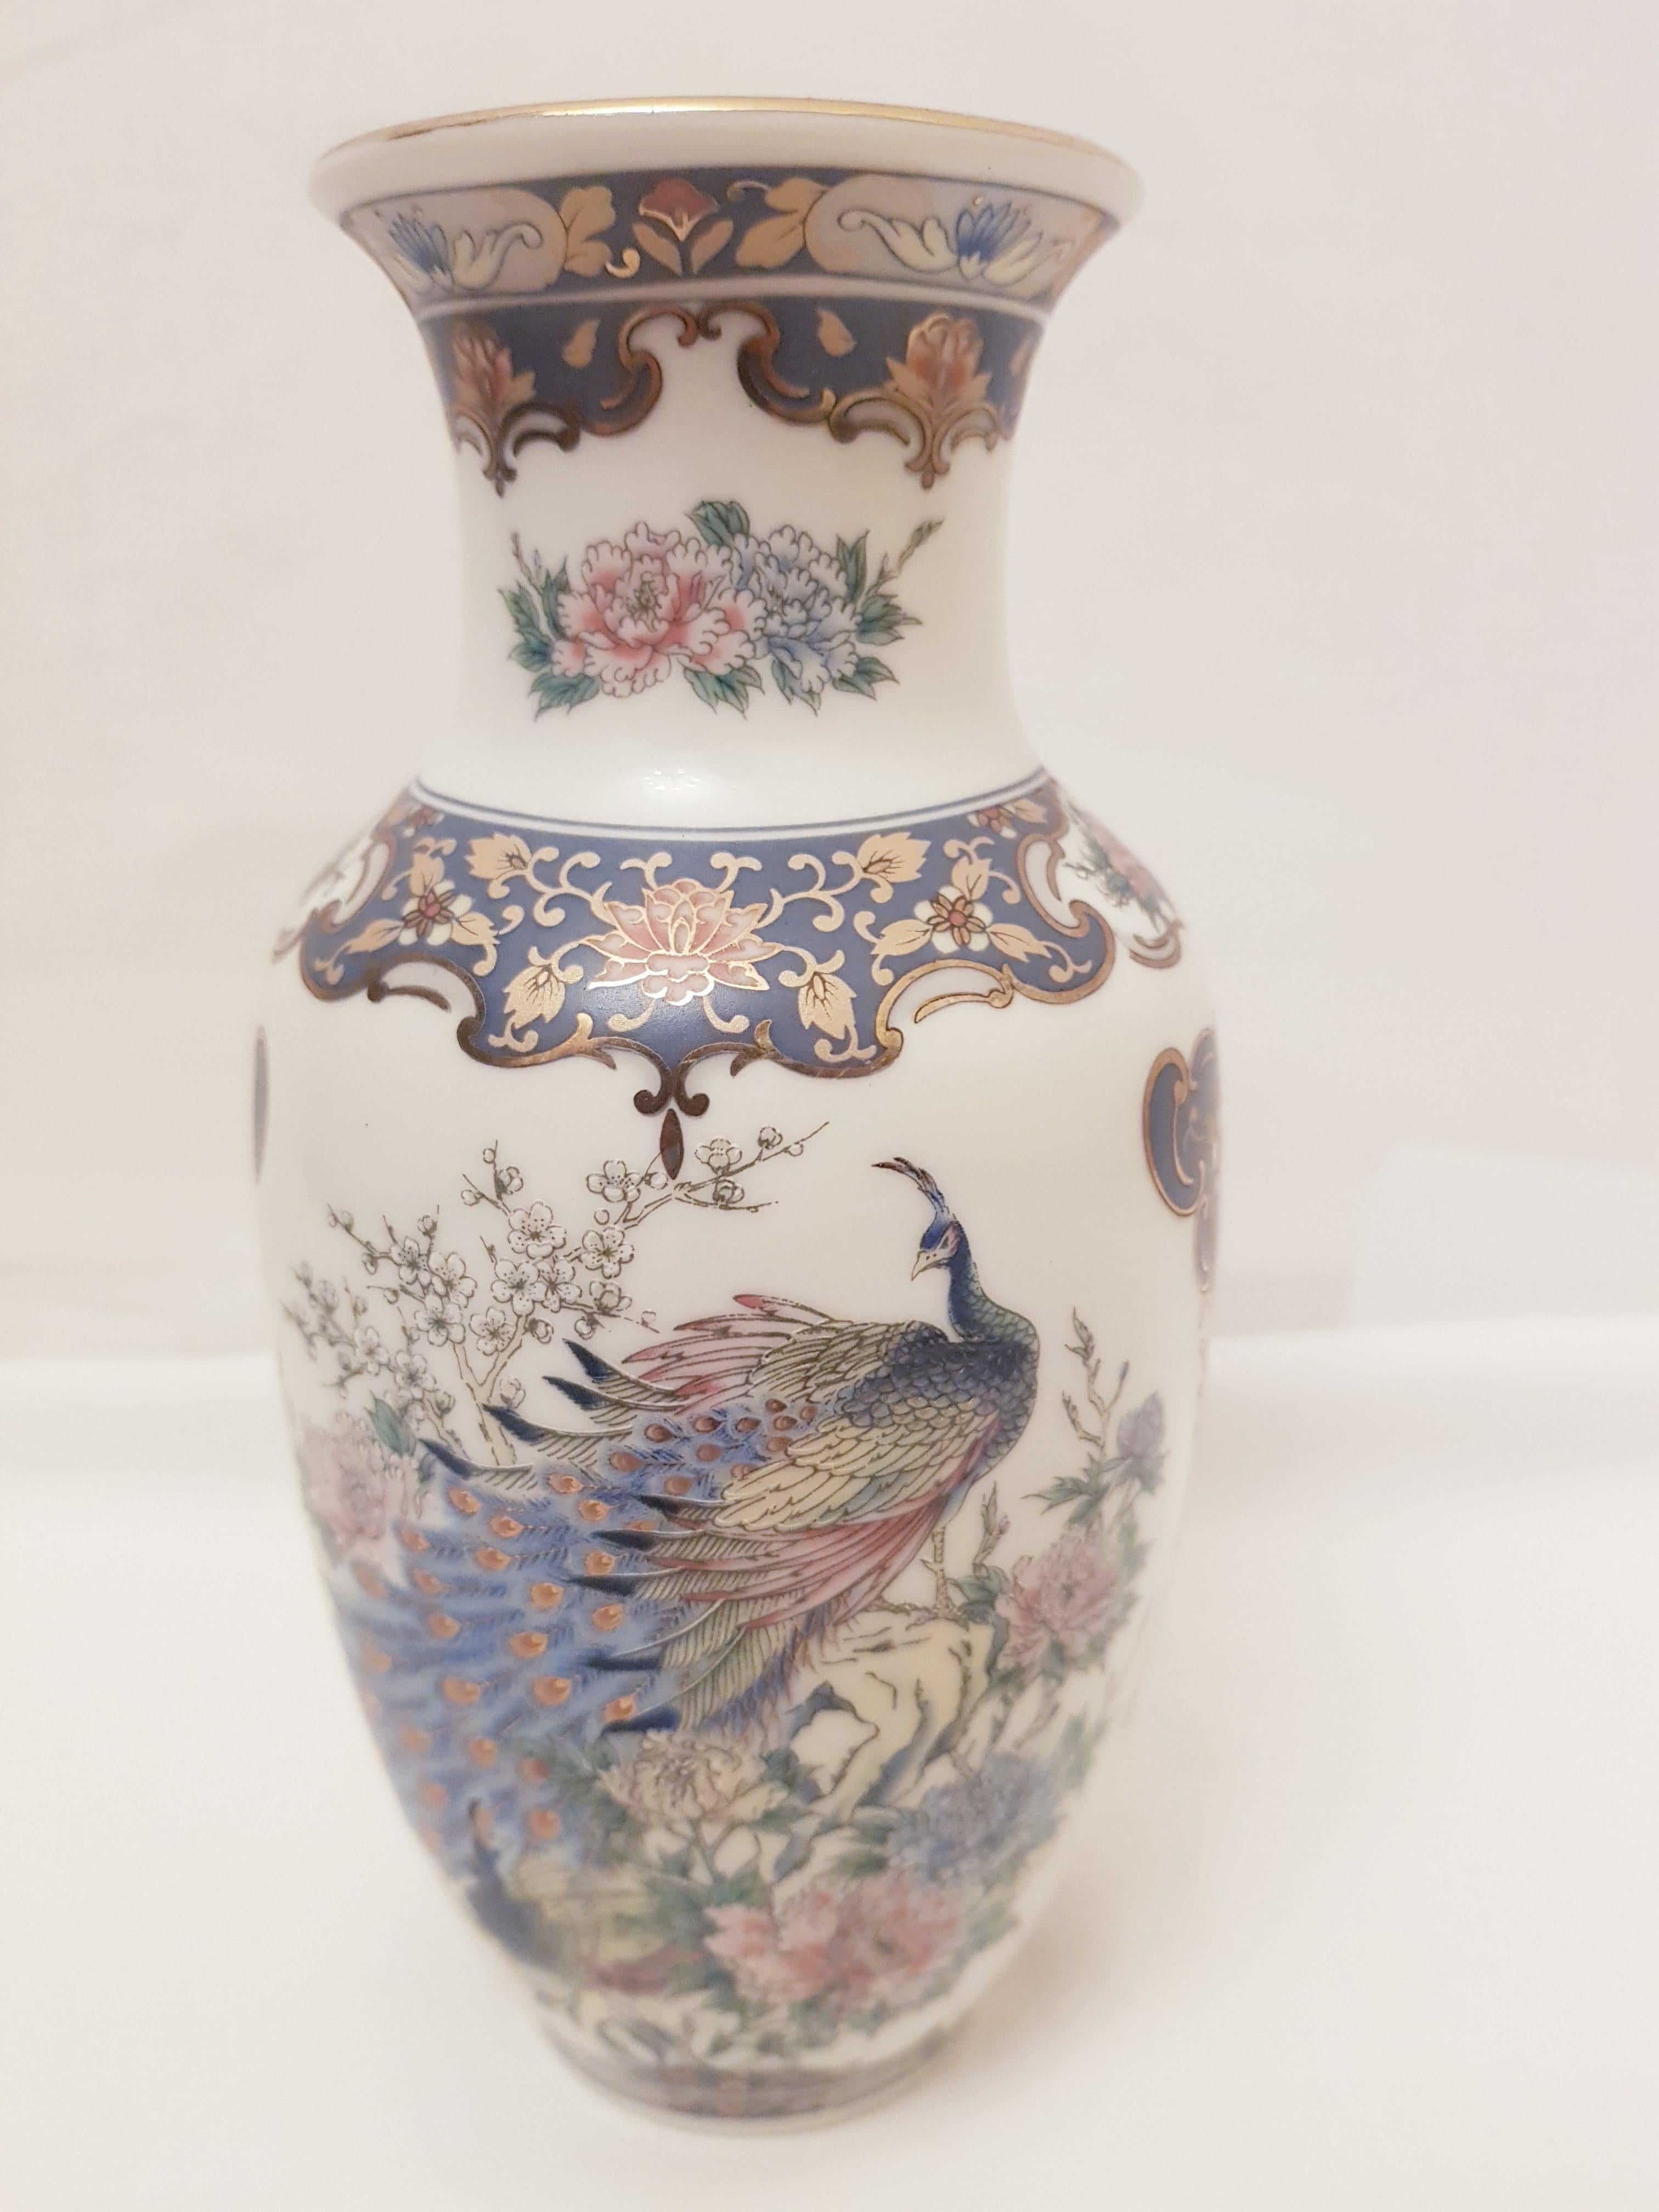 Beautiful vitange Japanese ceramic vase brilliant condition beautiful home decor.